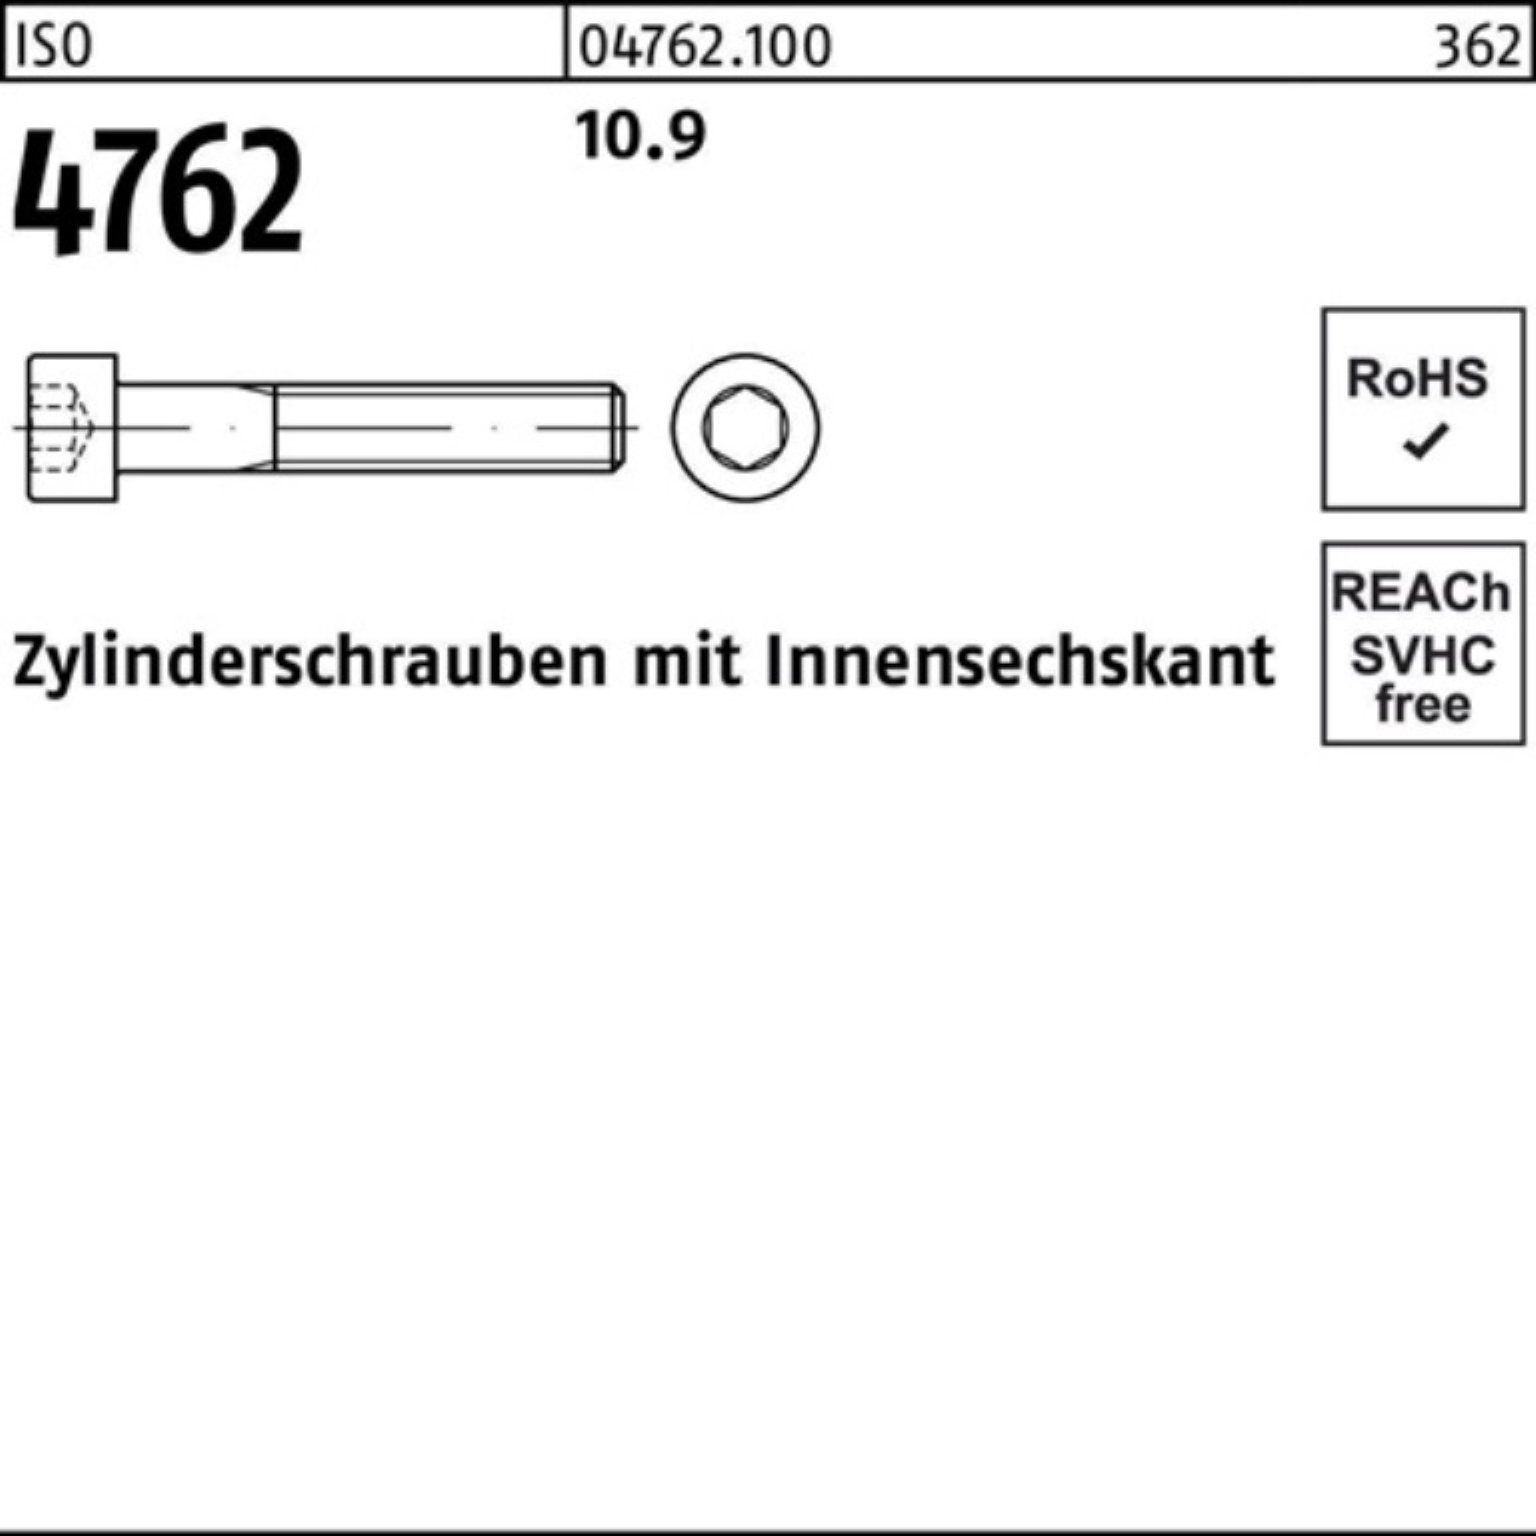 M4x Stück ISO Reyher Zylinderschraube Innen-6kt Zylinderschraube Pack 500er 500 10.9 10 4762